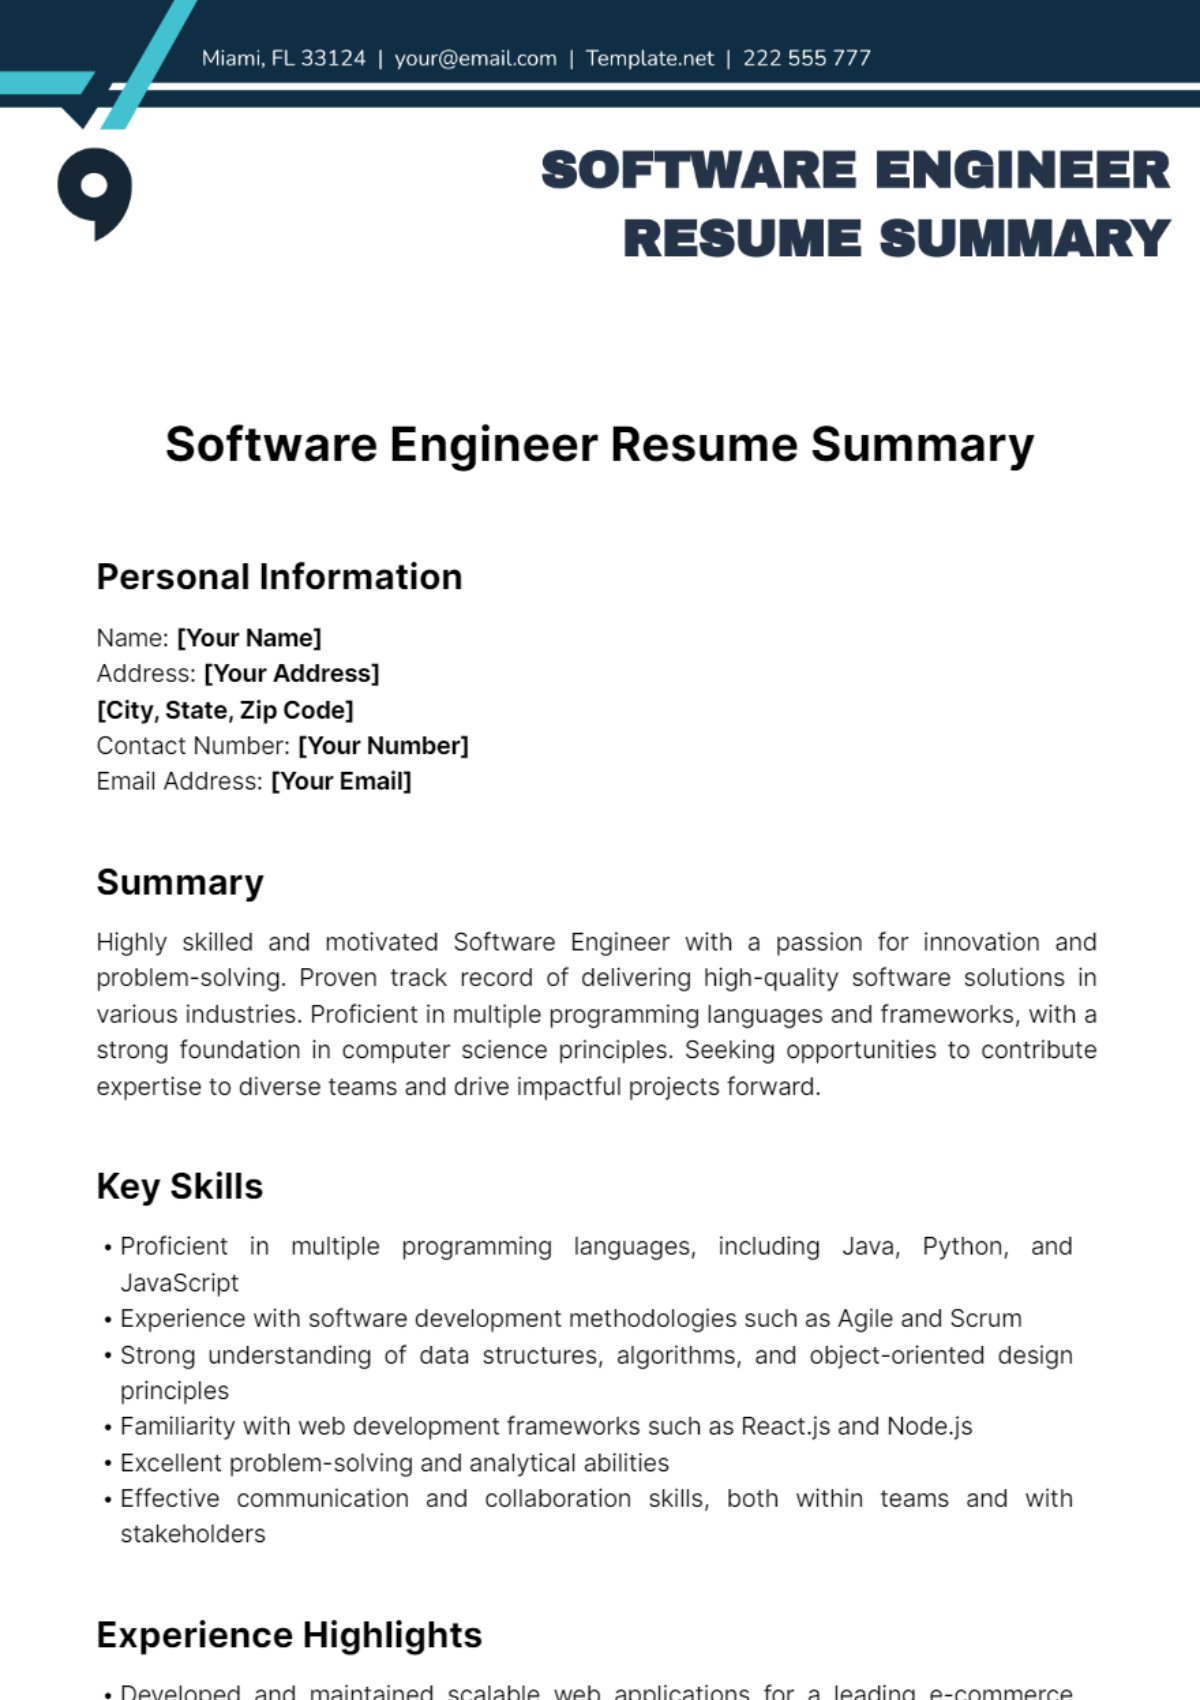 Software Engineer Resume Summary Template